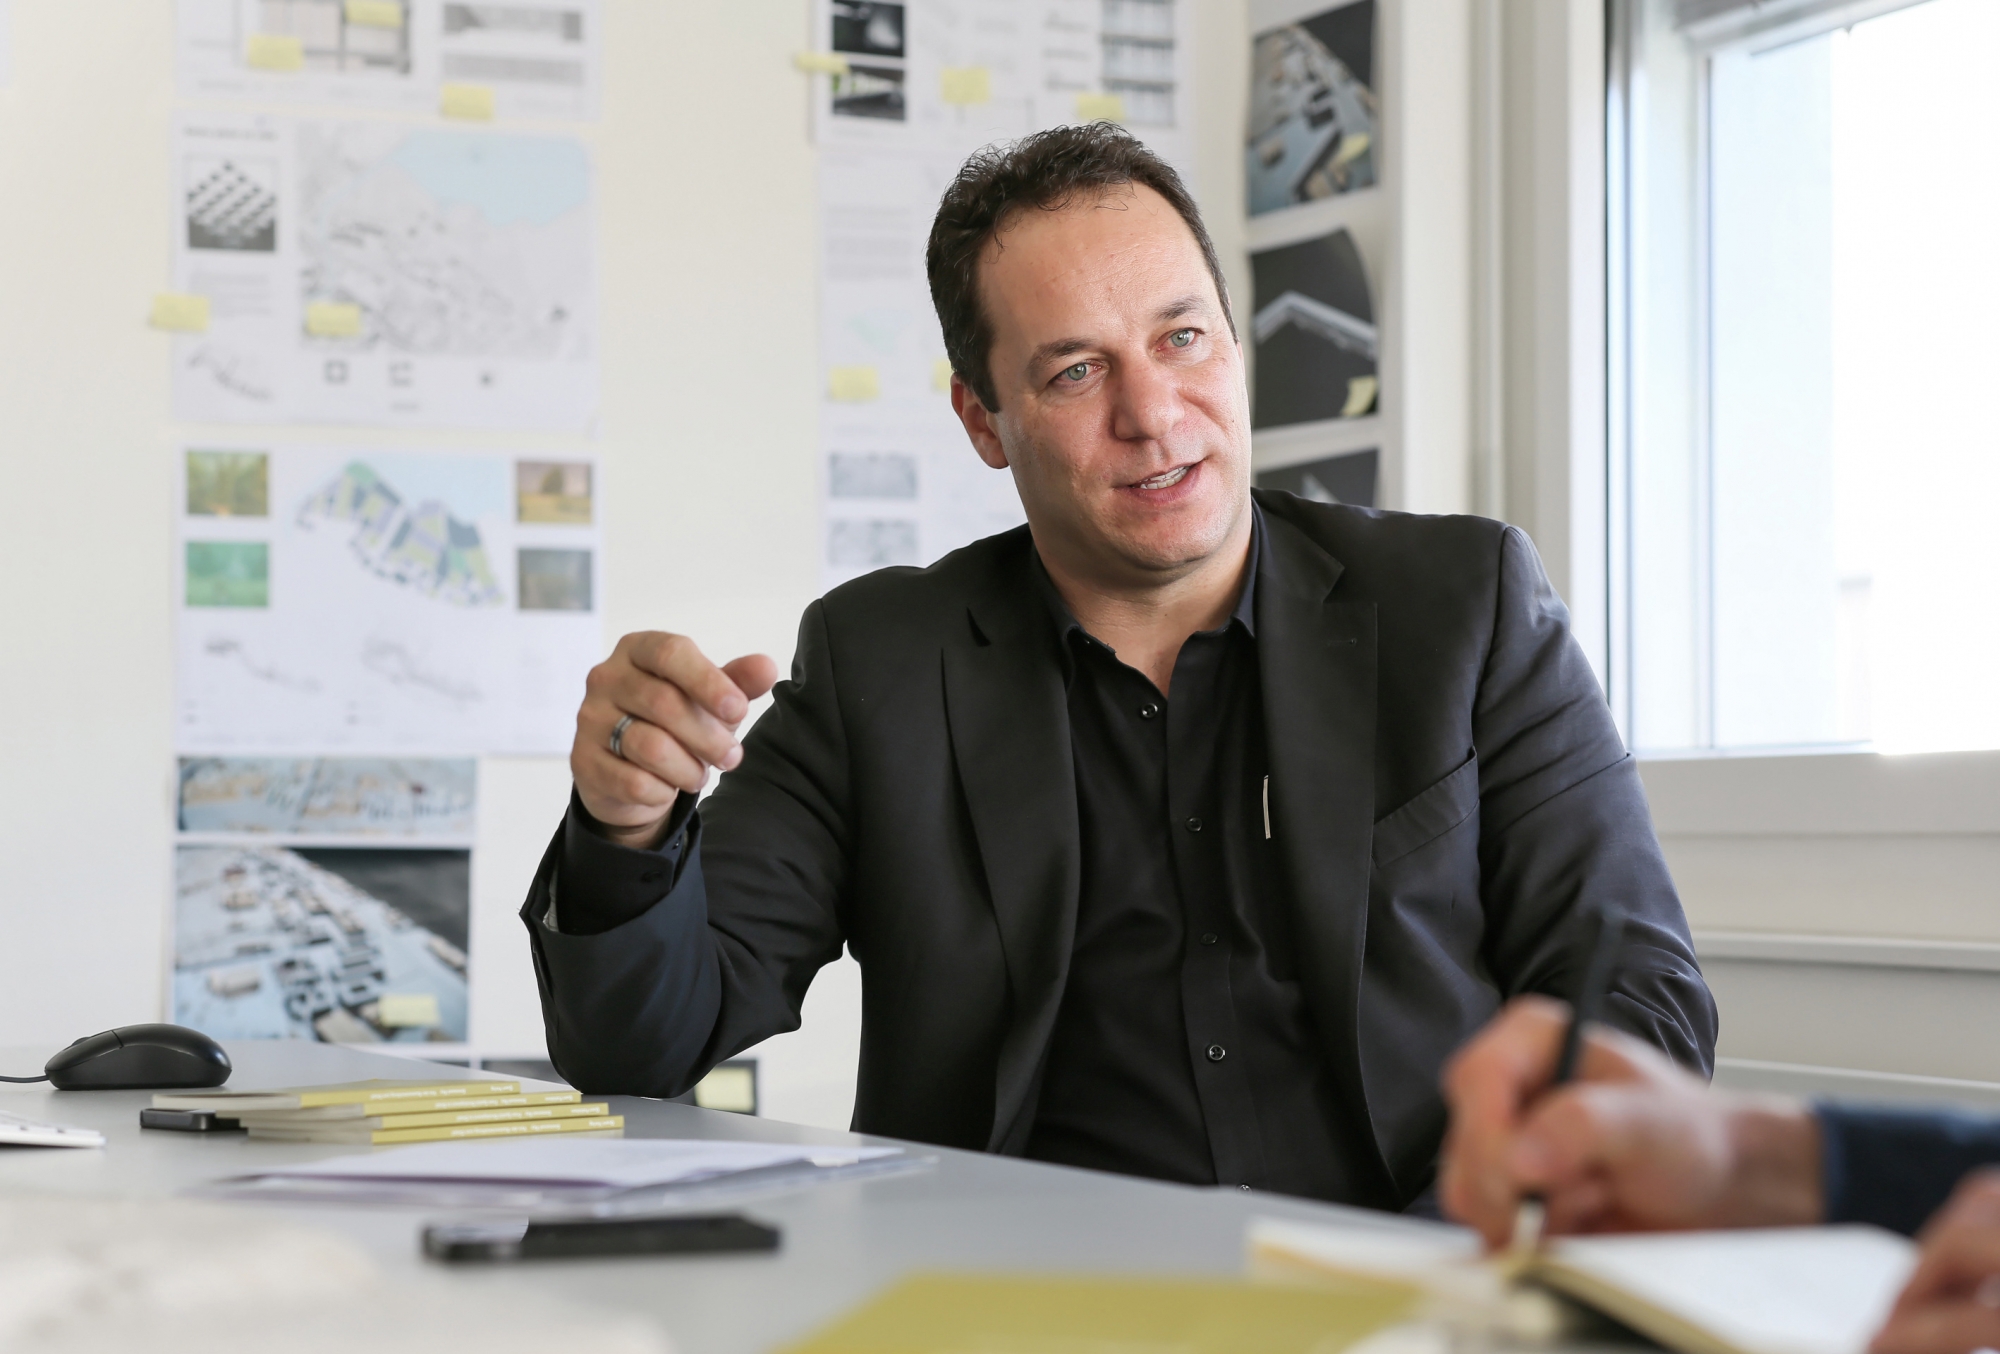 Emmanuel Rey, Professeur de projet d'architecture et directeur du Laboratoire d’architecture et technologies durables (LAST) de l’EPFL